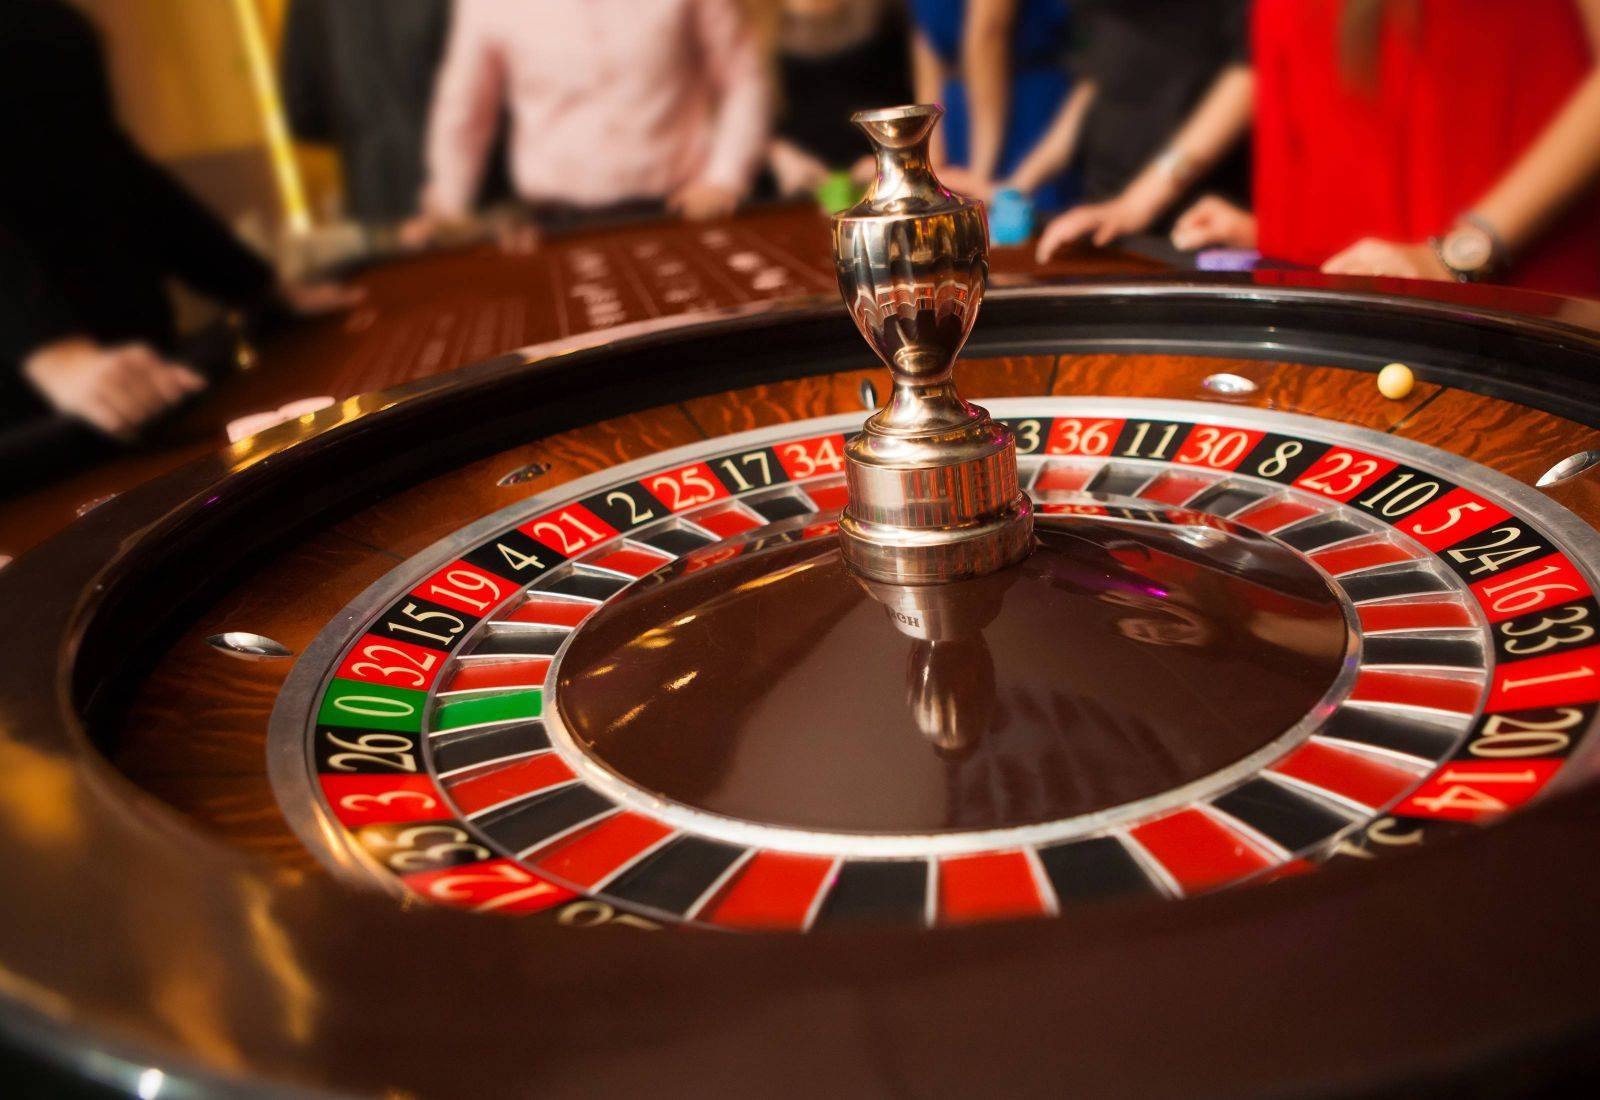 Casino Gi8 siêu hấp dẫn và đa dạng, trải nghiệm chân thực như sòng bài lớn ngoài đời.